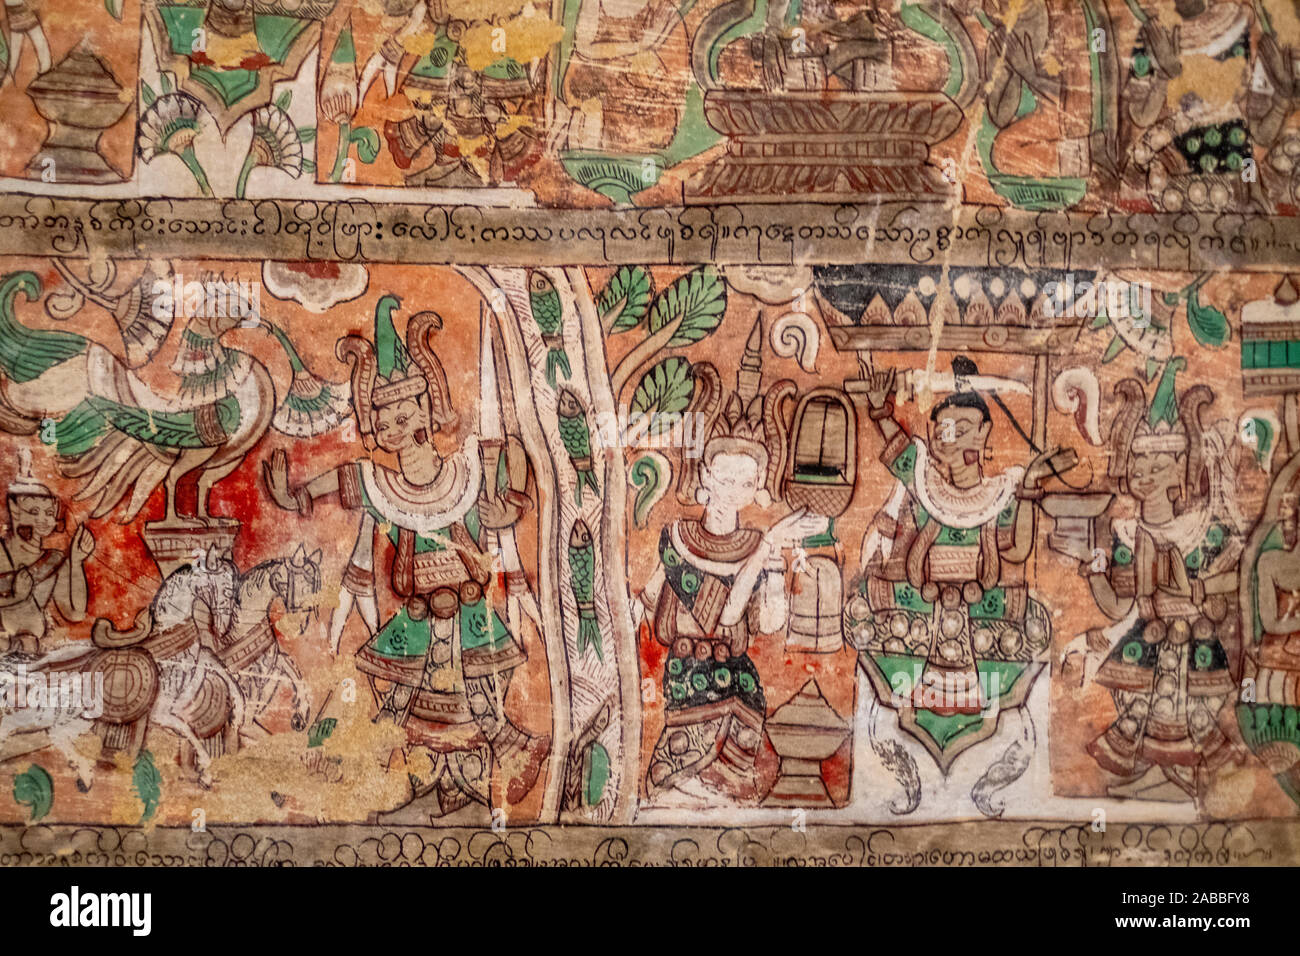 Wandmalerei und religiöse Kunstwerke schmücken die Phowin Taung Höhlen entlang der Chindwin Fluss im Nordwesten Myanmar (Birma) Stockfoto